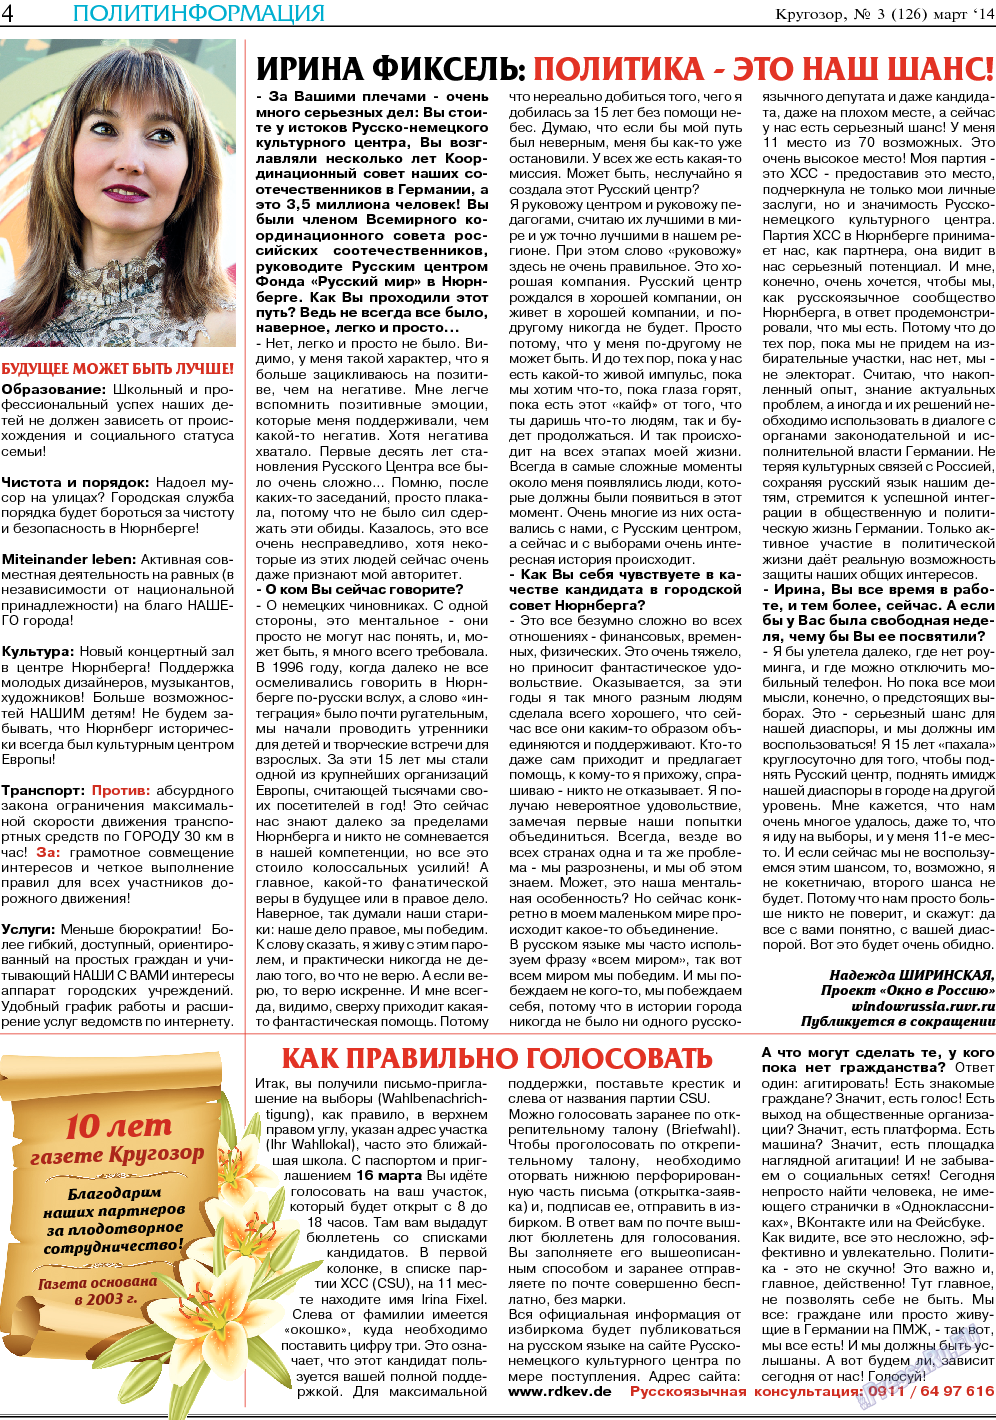 Кругозор, газета. 2014 №3 стр.4